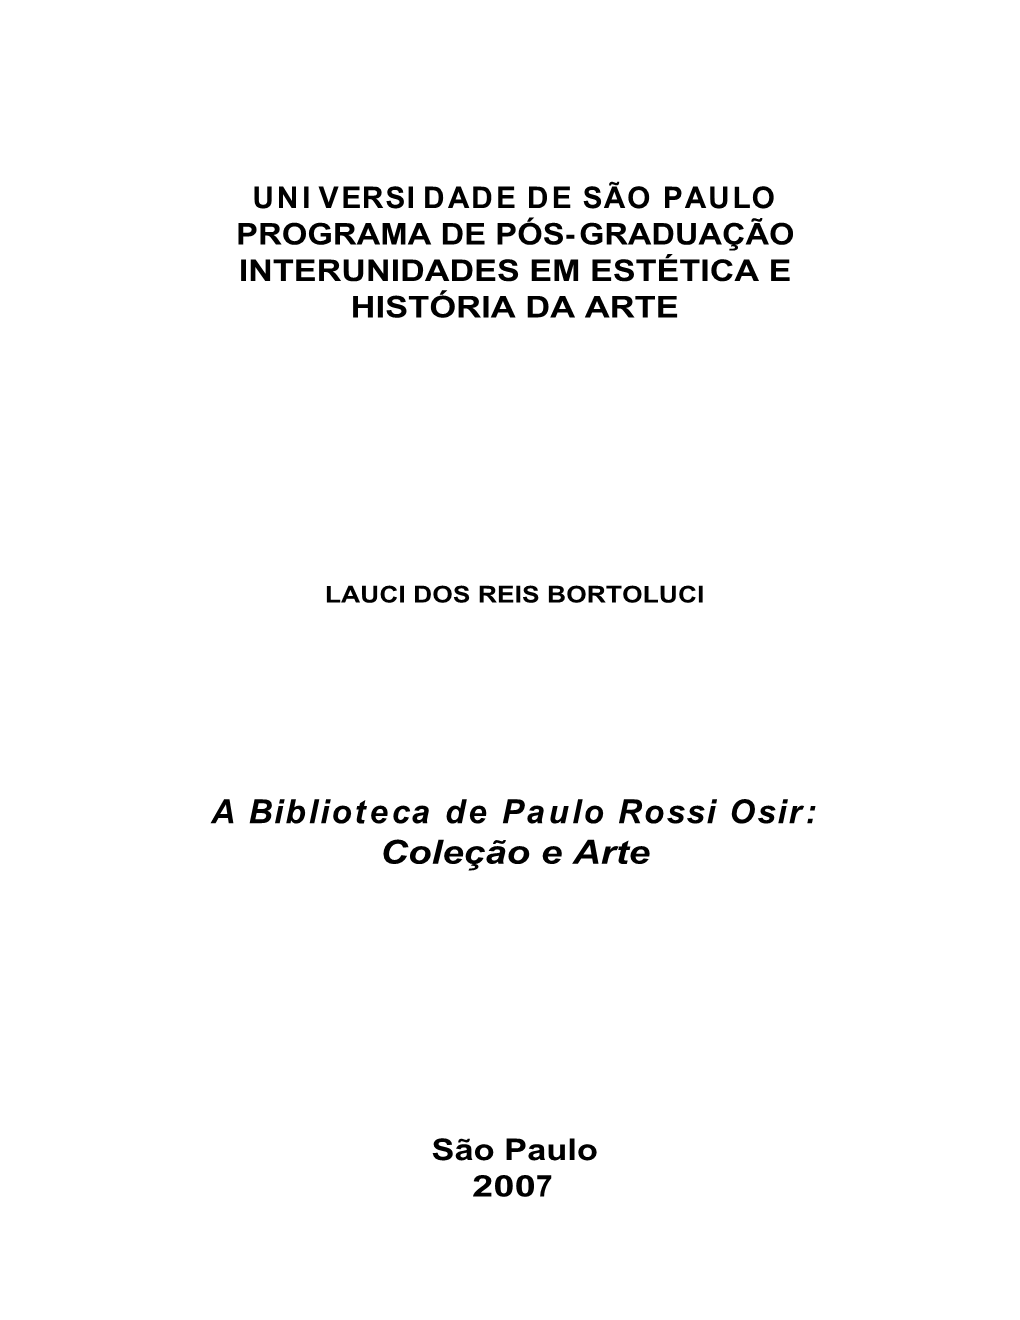 A Biblioteca De Paulo Rossi Osir: Coleção E Arte